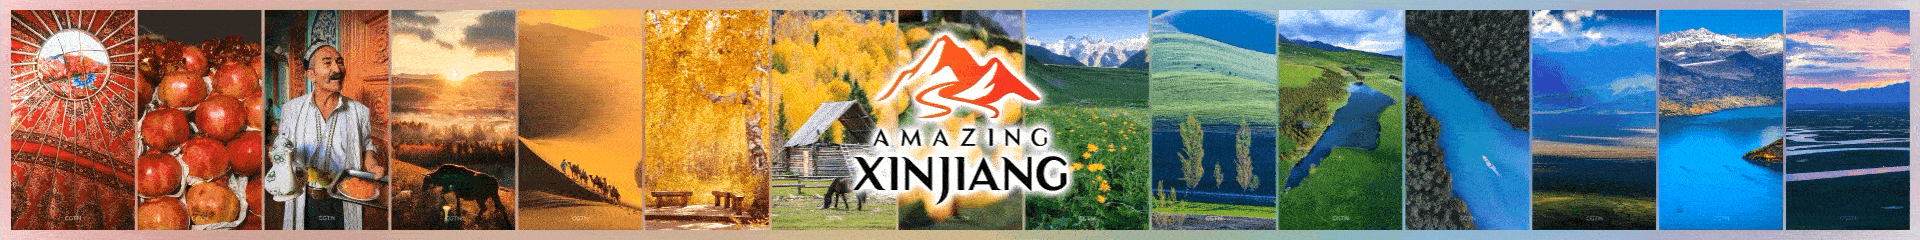 Amazing Xinjiang